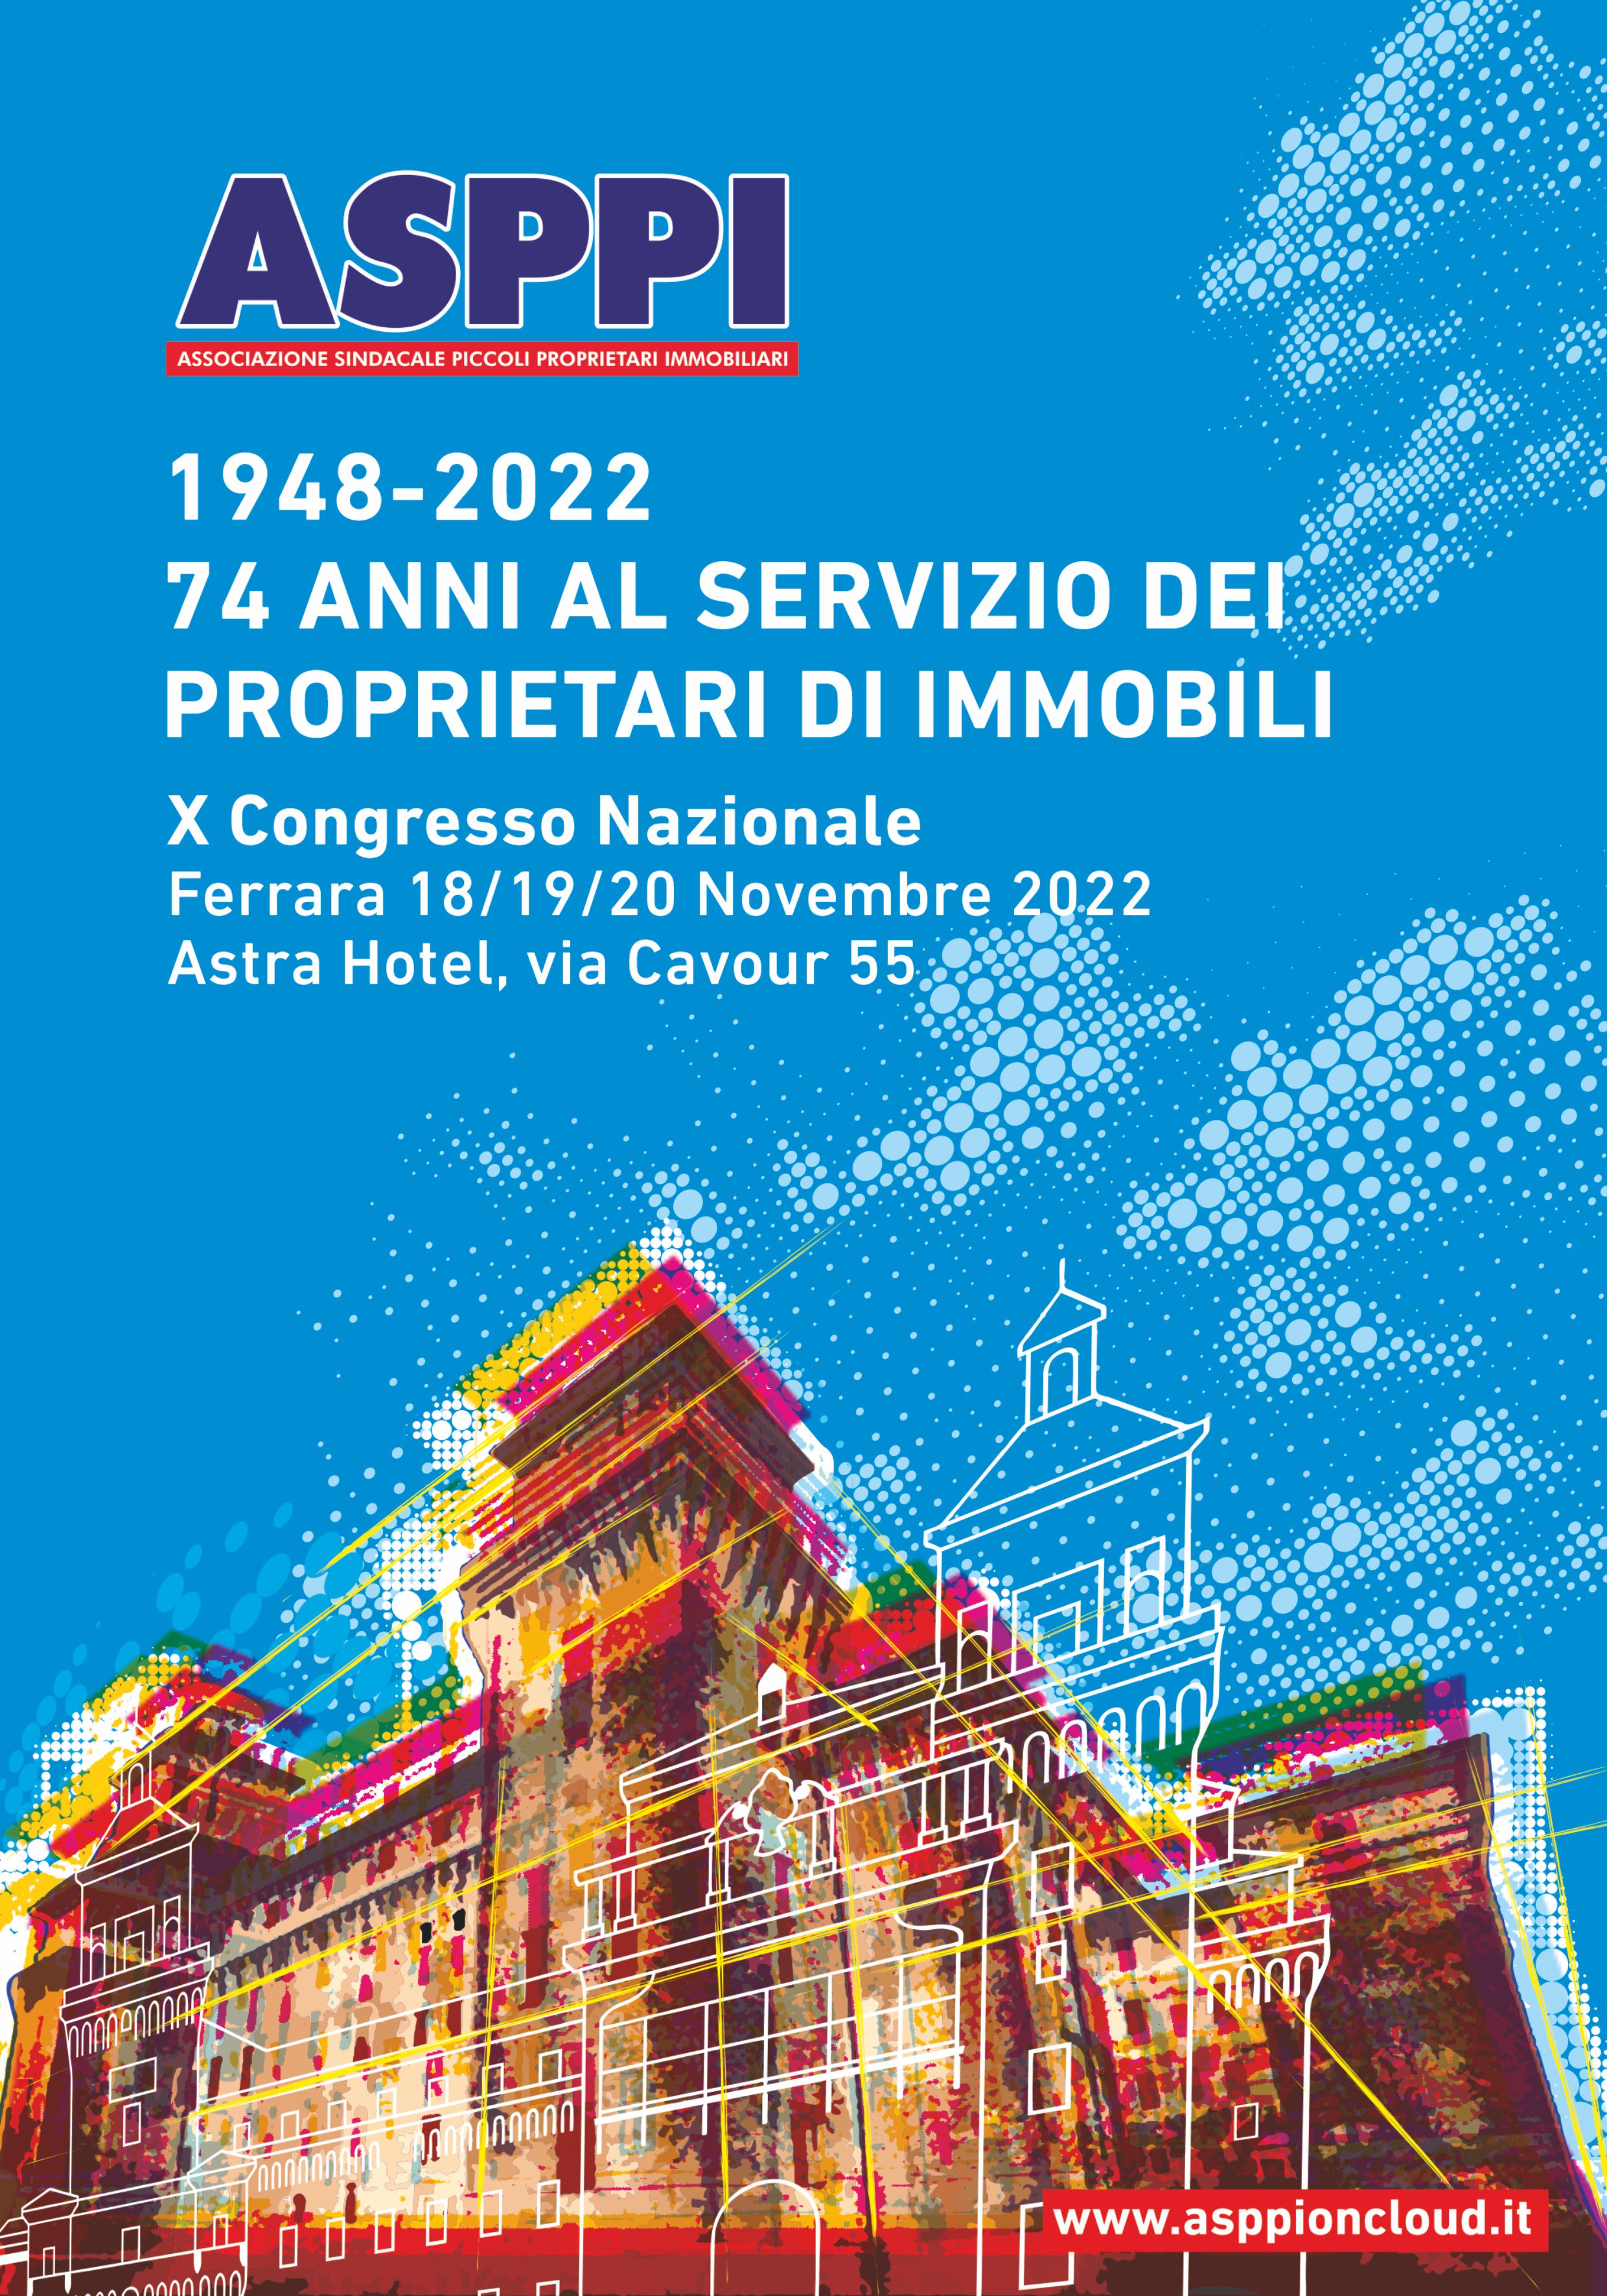 X Congresso Nazionale ASPPI – Ferrara 18/19/20 novembre 2022